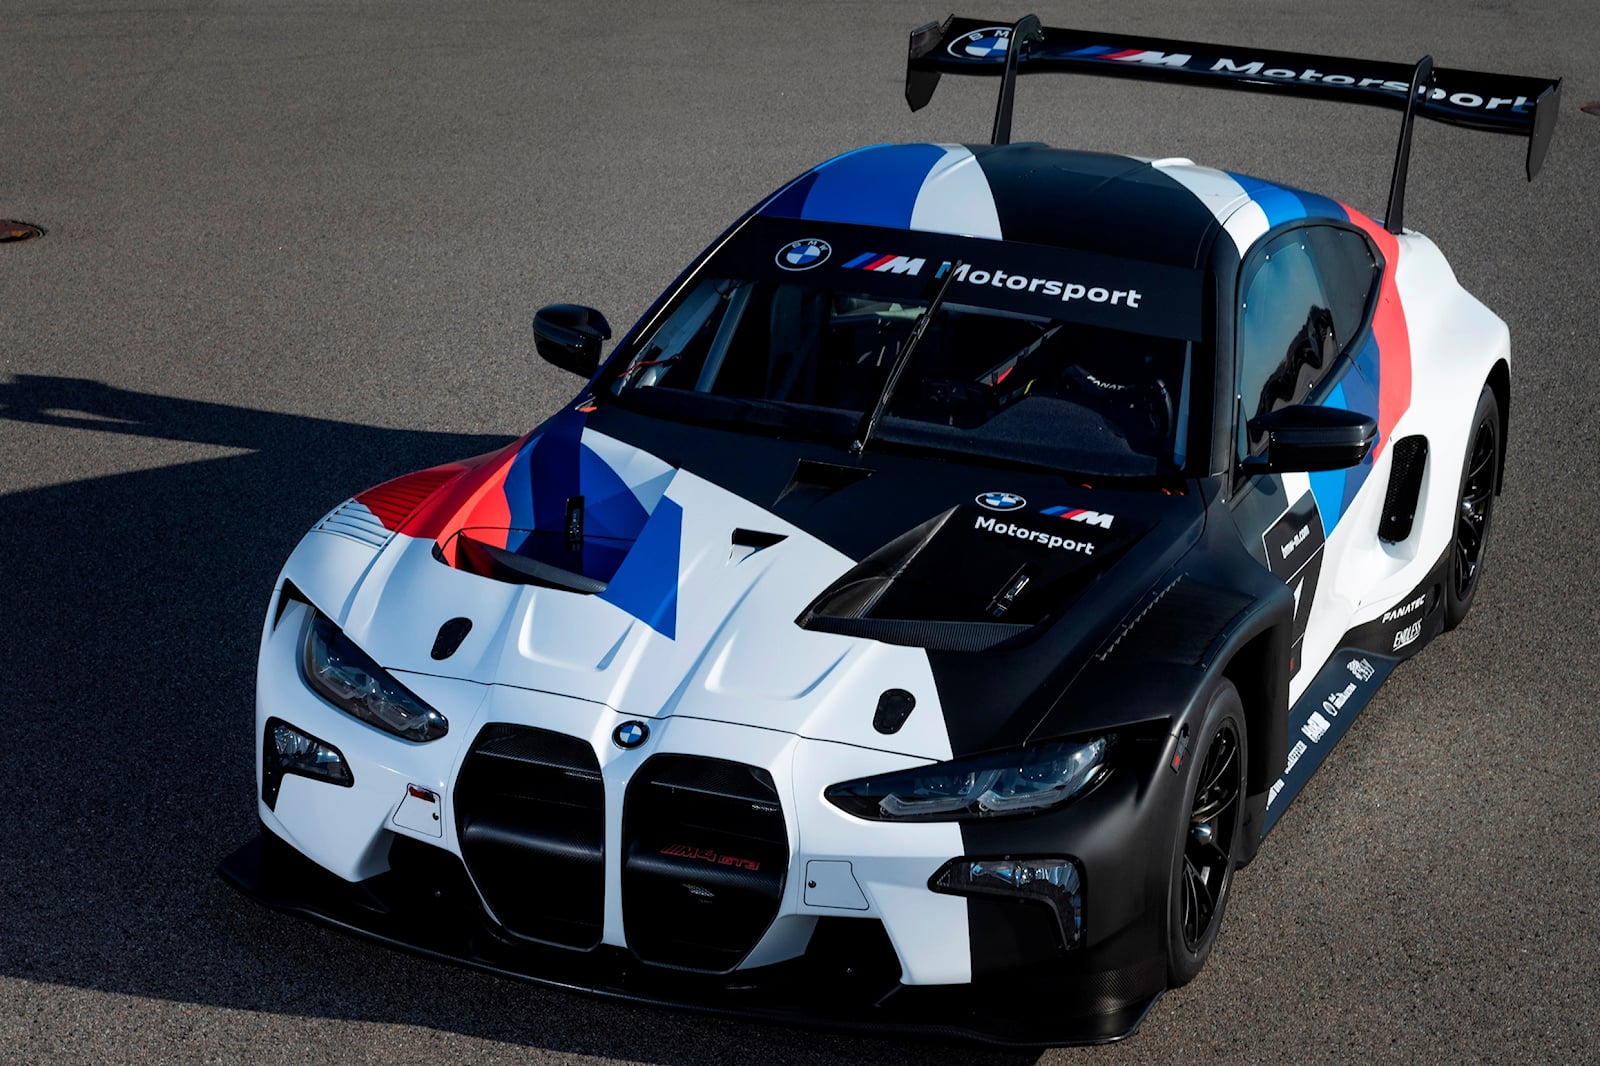 Но трудится не только подразделение M — BMW Motorsport усердно работает над грядущим M4 GT4. Дочерняя компания недавно представила тизер специального гоночного автомобиля, который должен заменить модель на базе F82. Изображение мало что выдает, но да